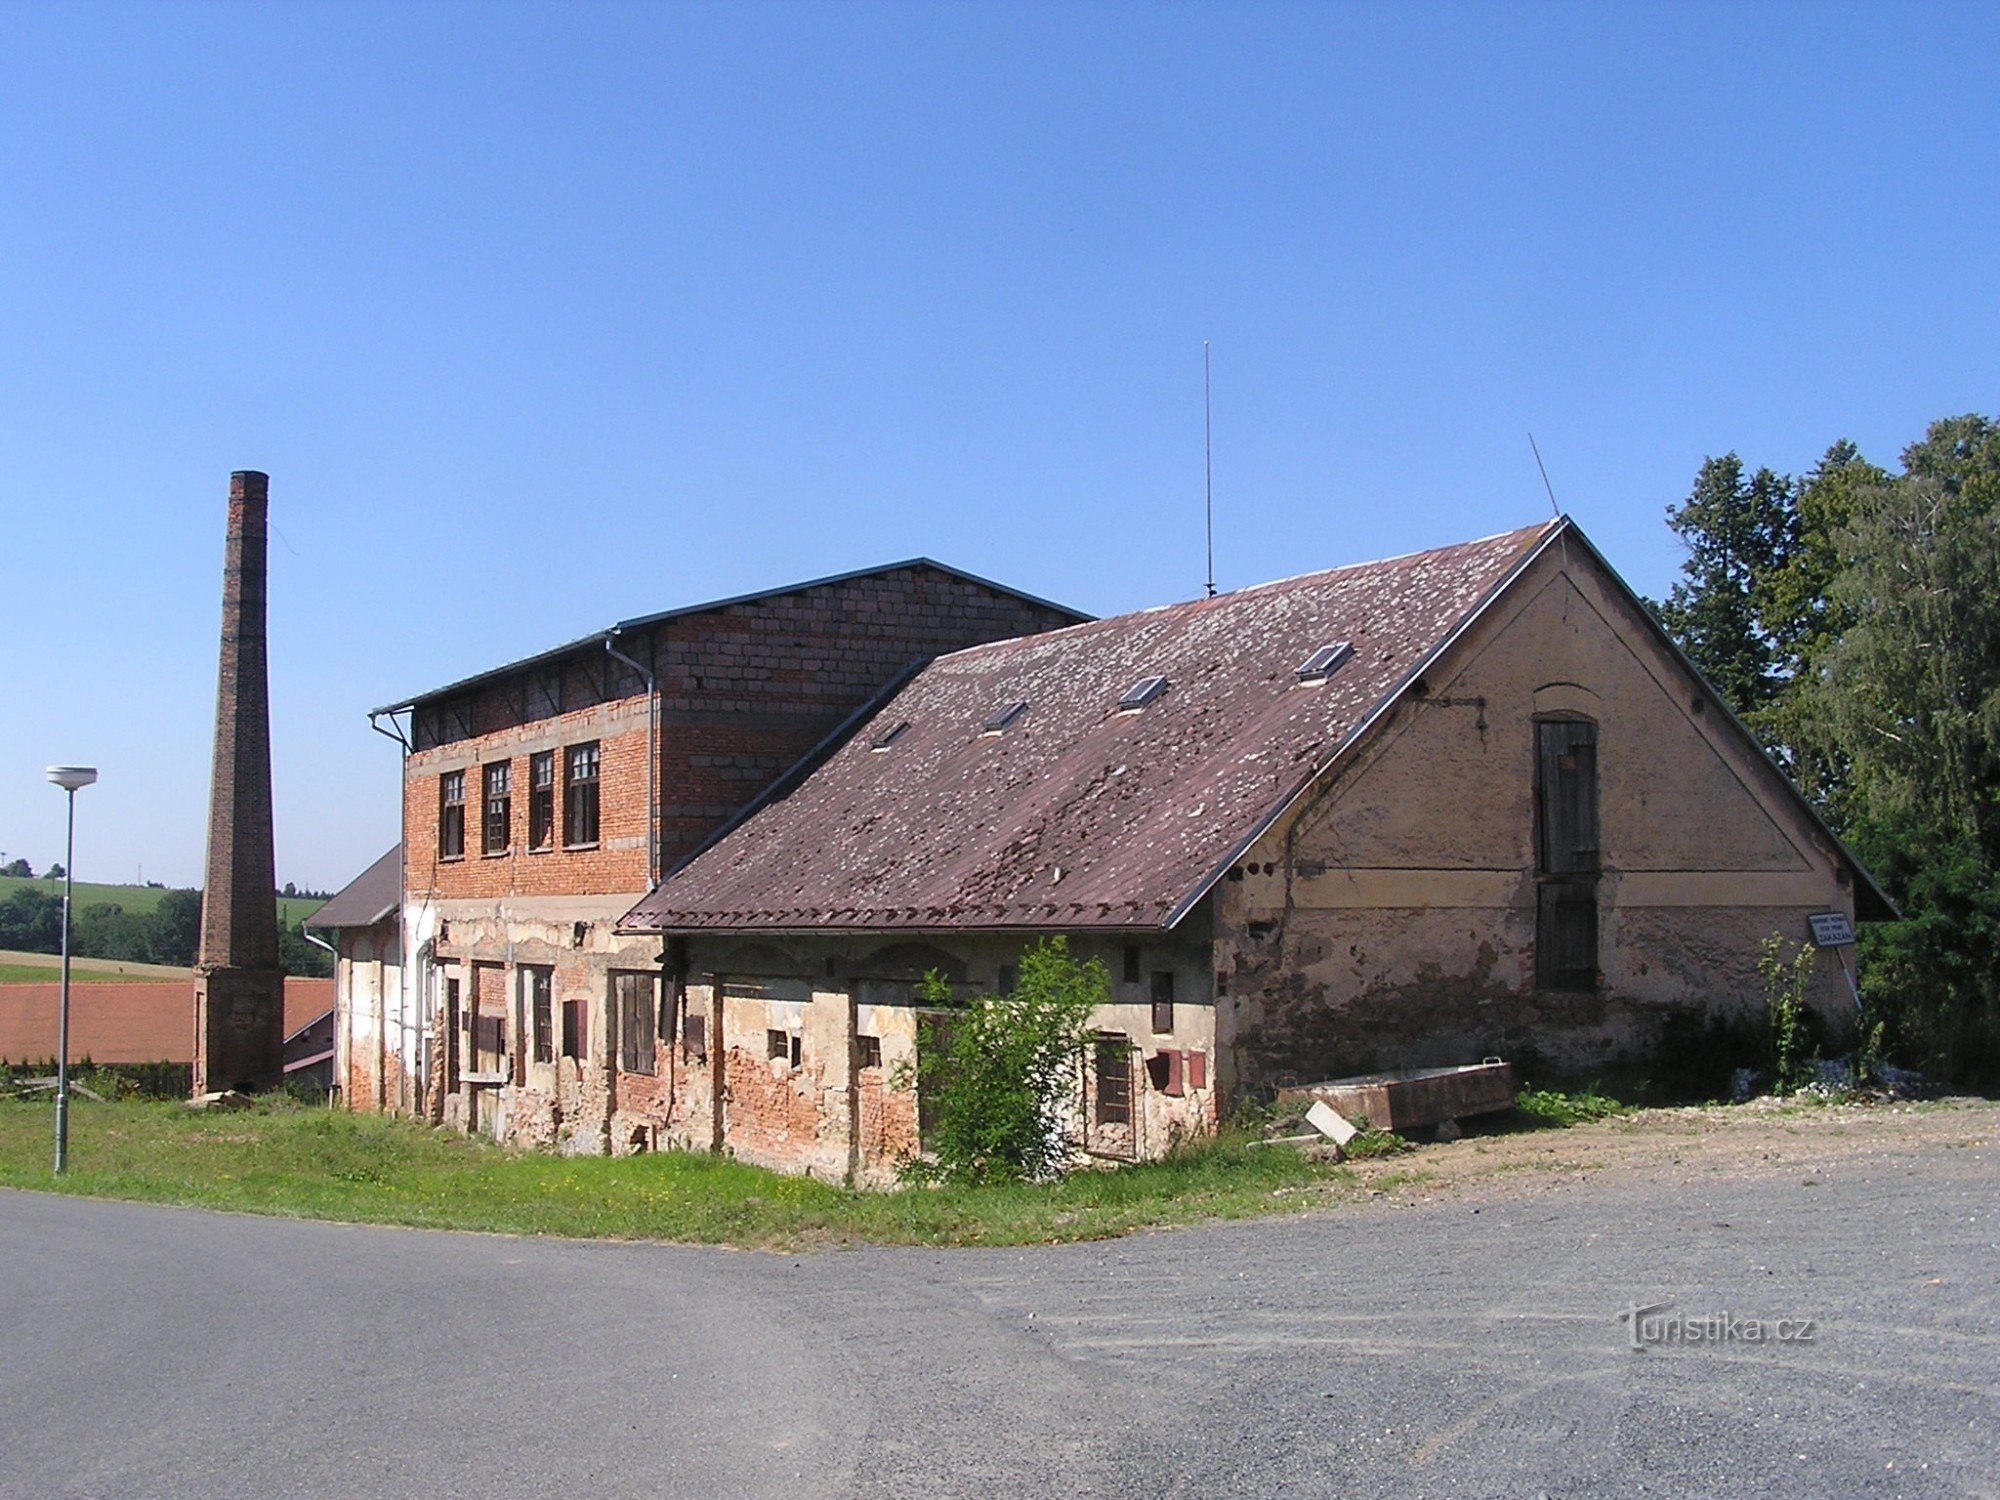 Zbraslavice 的堡垒 - 农场建筑 - 7.8.2008 年 XNUMX 月 XNUMX 日